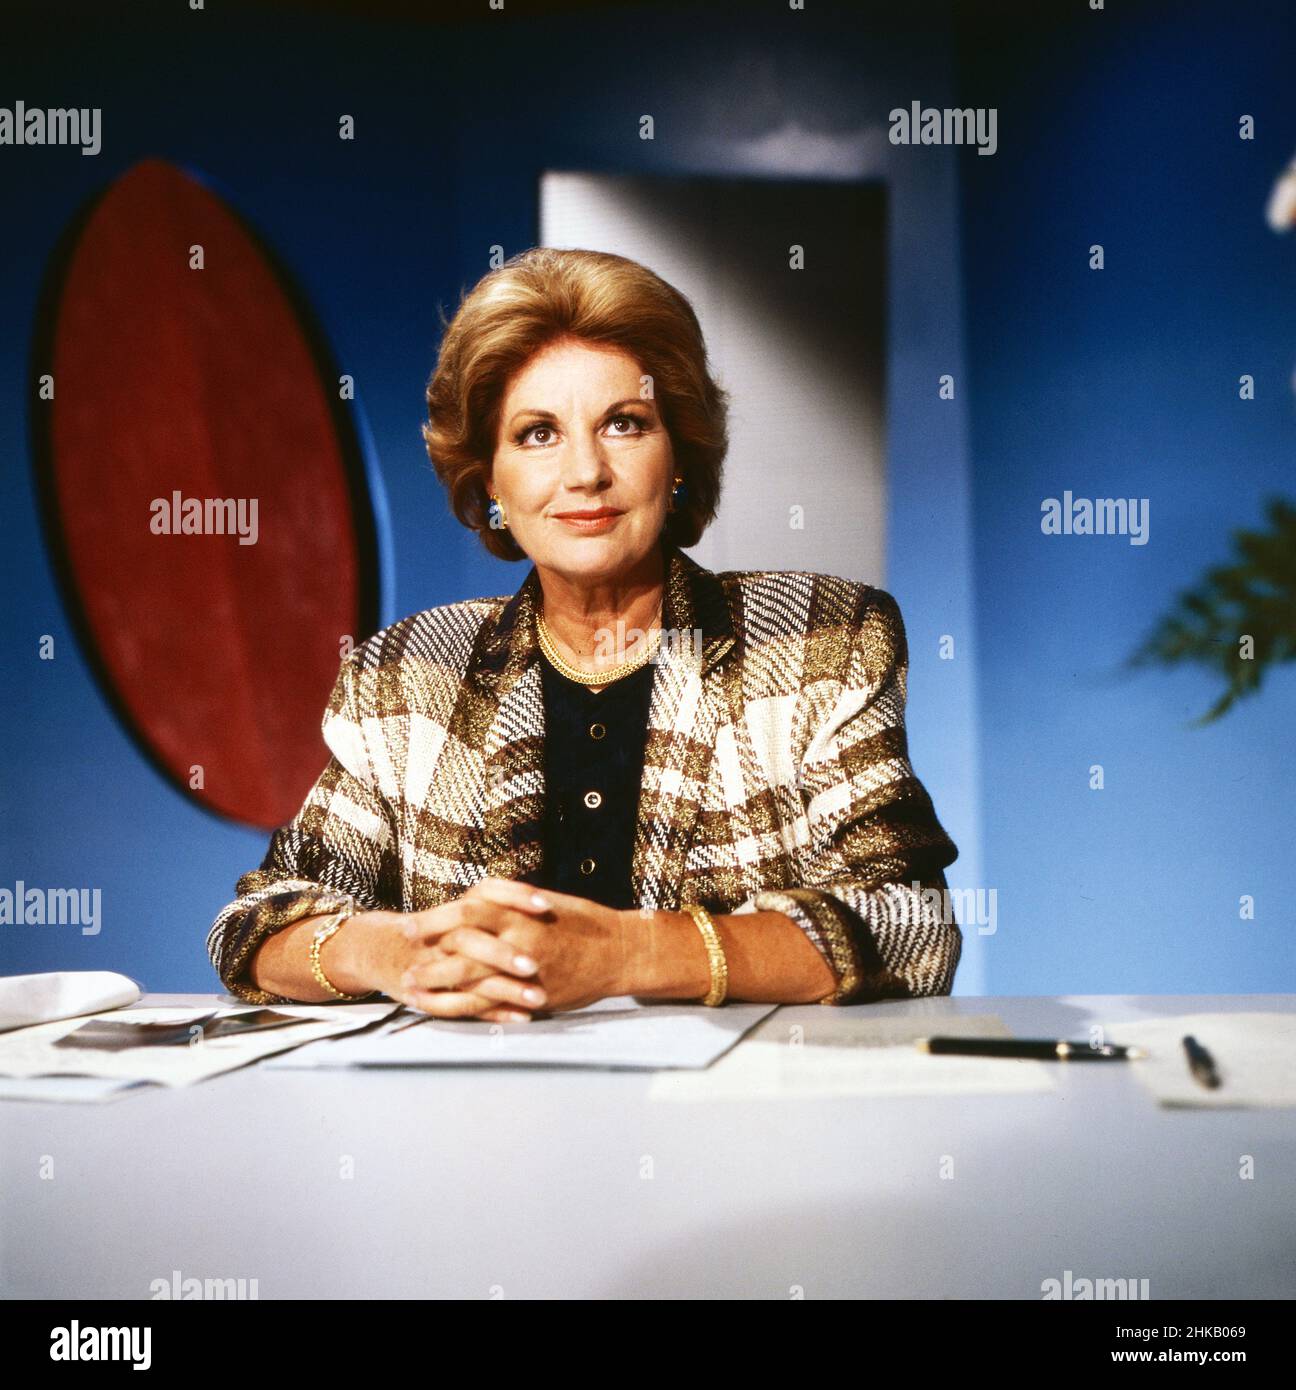 Fragen Sie Frau Doktor Cora, Comedy-Sendereihe, Deutschland 1989, Darsteller: Johanna von Koczian in der Seufzer-Ecke Stock Photo